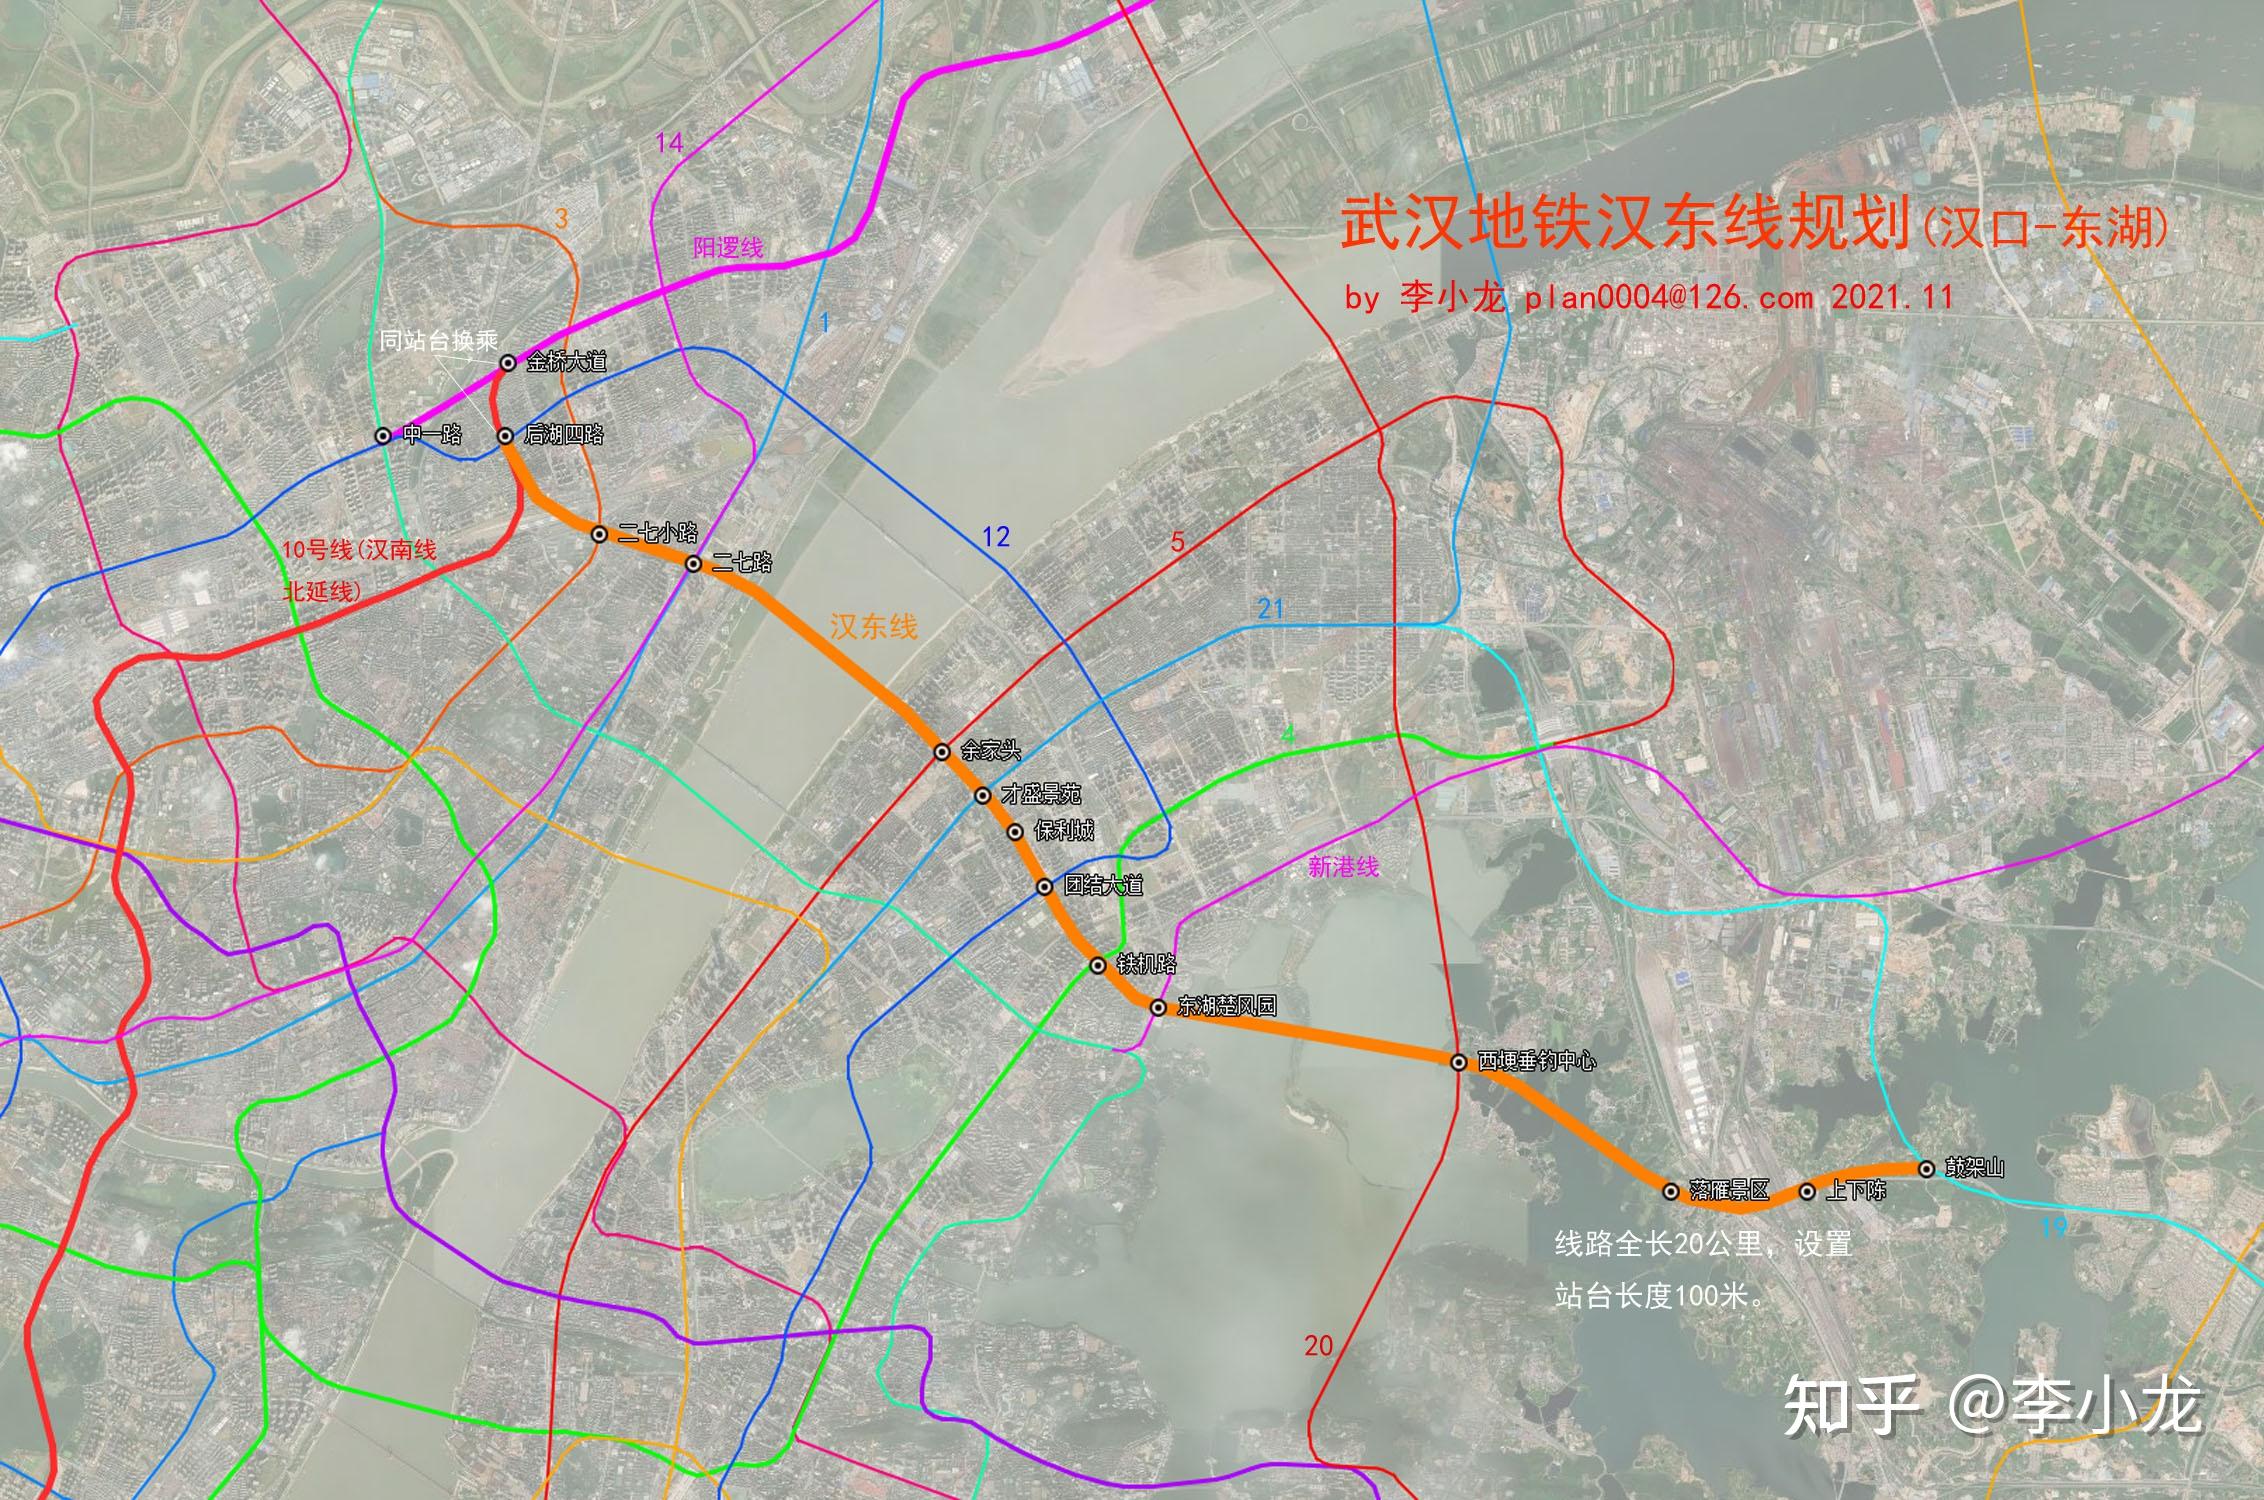 图文中提到的其他地铁规划线路及方案读者可以参考《武汉地铁规划